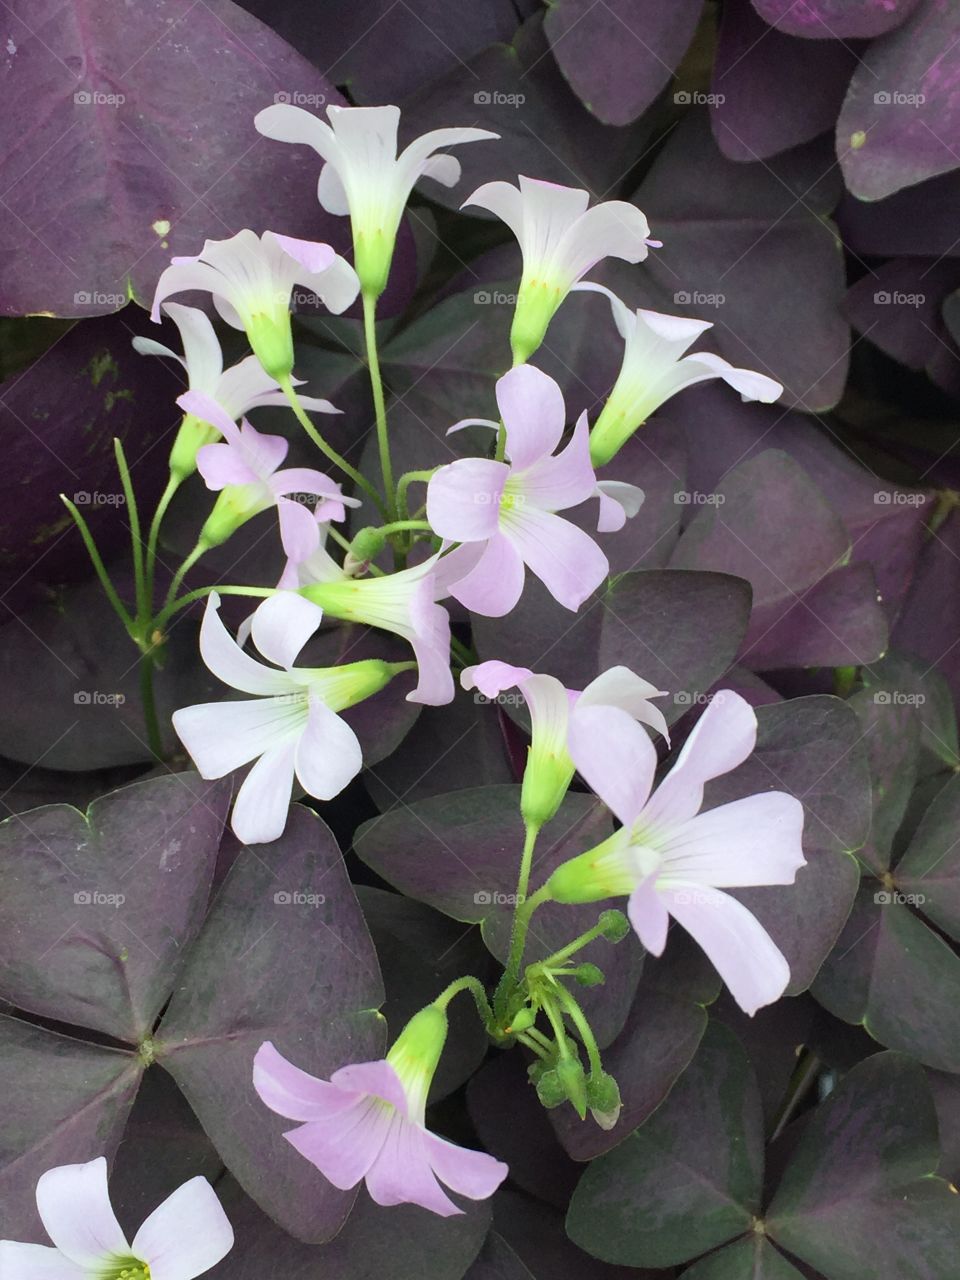 Purple clover